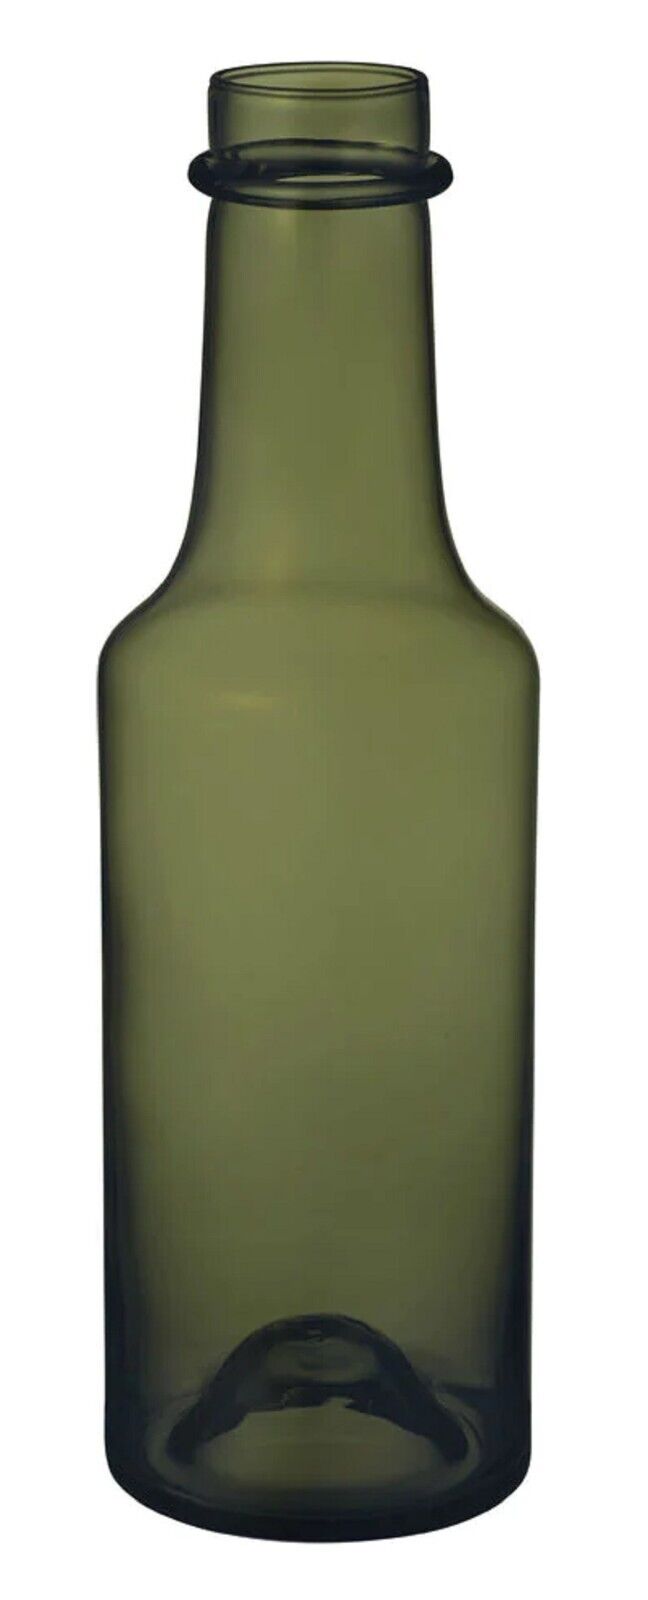 Iittala Tapio Wirkkala Limited Edition Glass Bottle, Moss Green Iittala Ittala Tapio Wirkkala Limited Edition